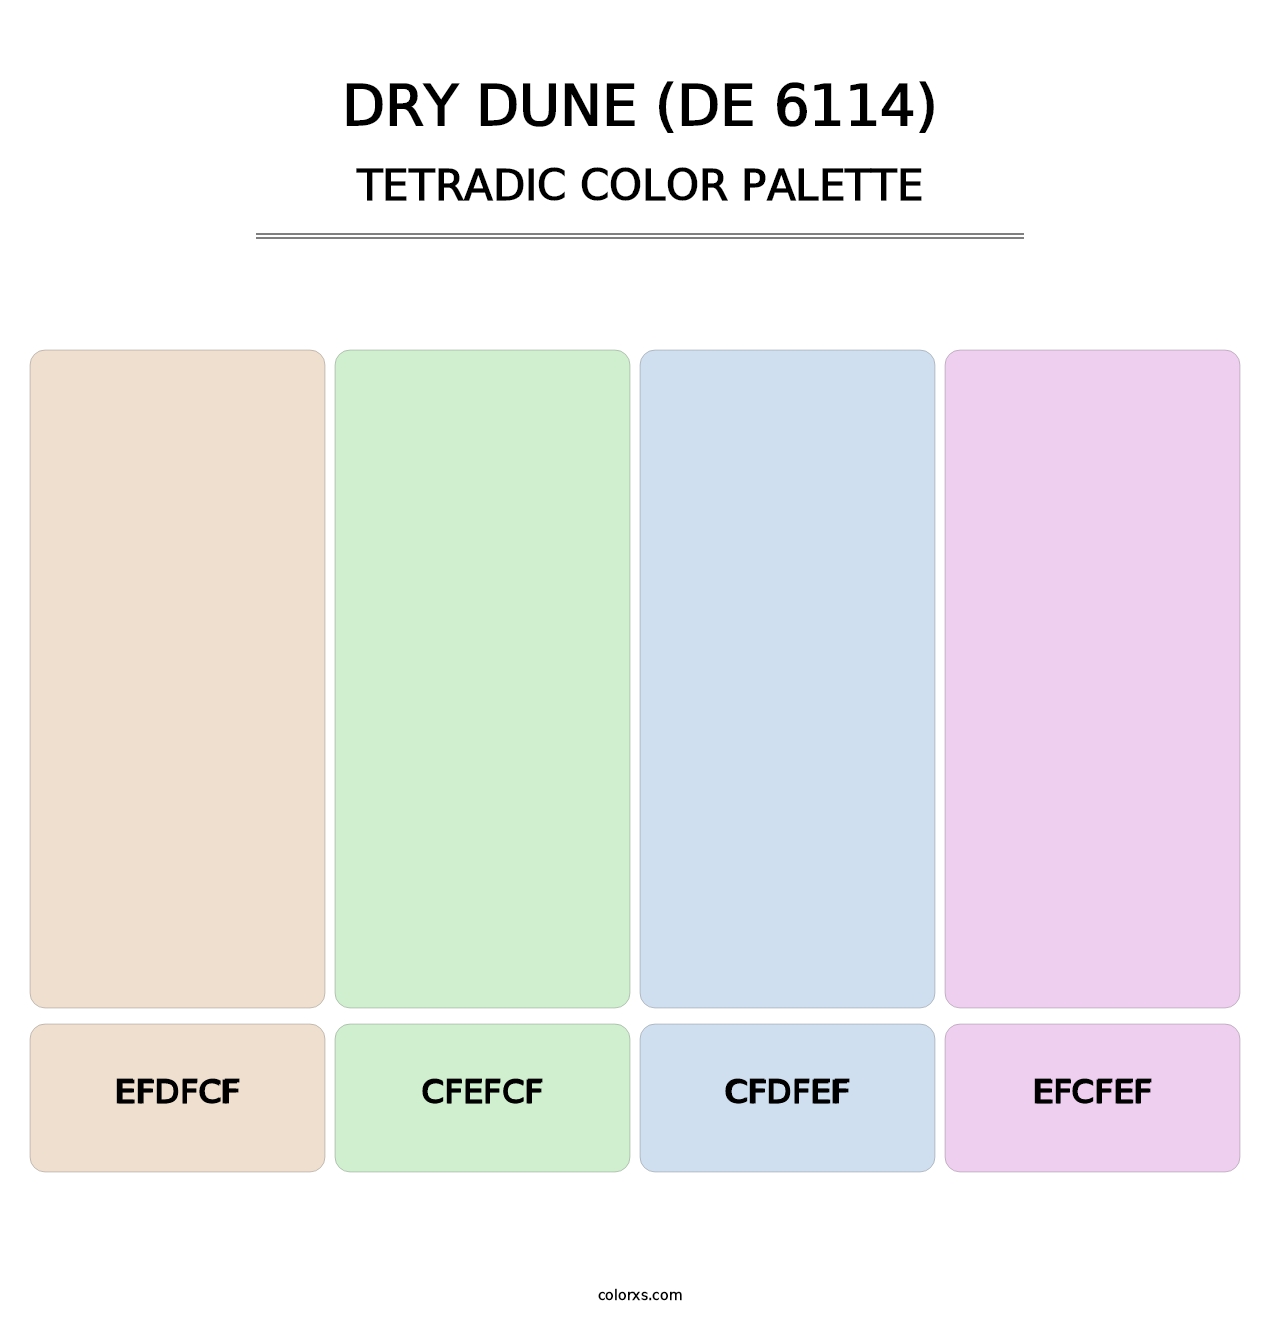 Dry Dune (DE 6114) - Tetradic Color Palette